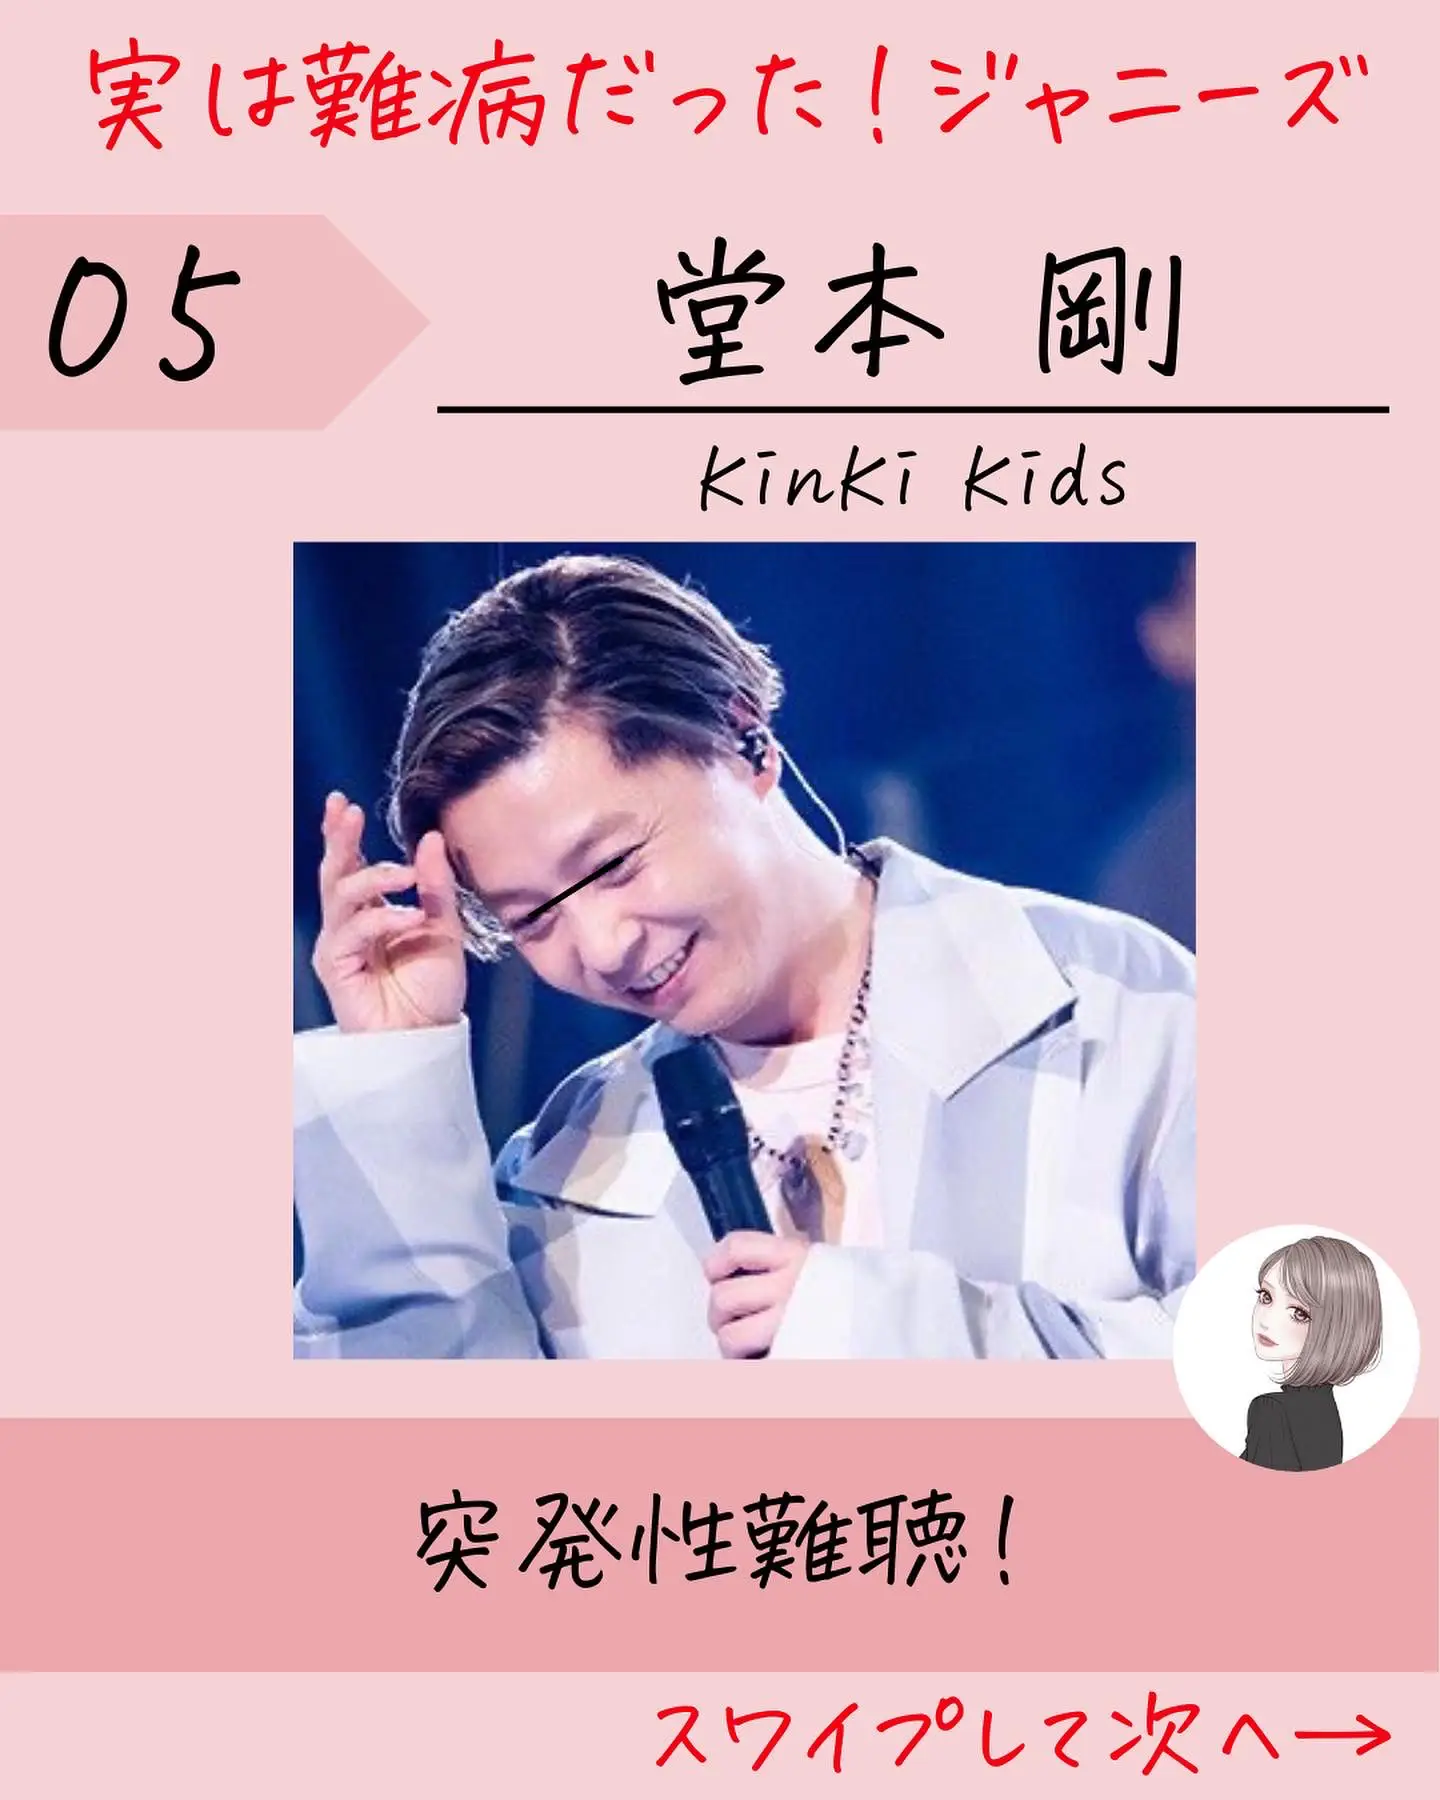 Kinki Kids剛 - Lemon8検索